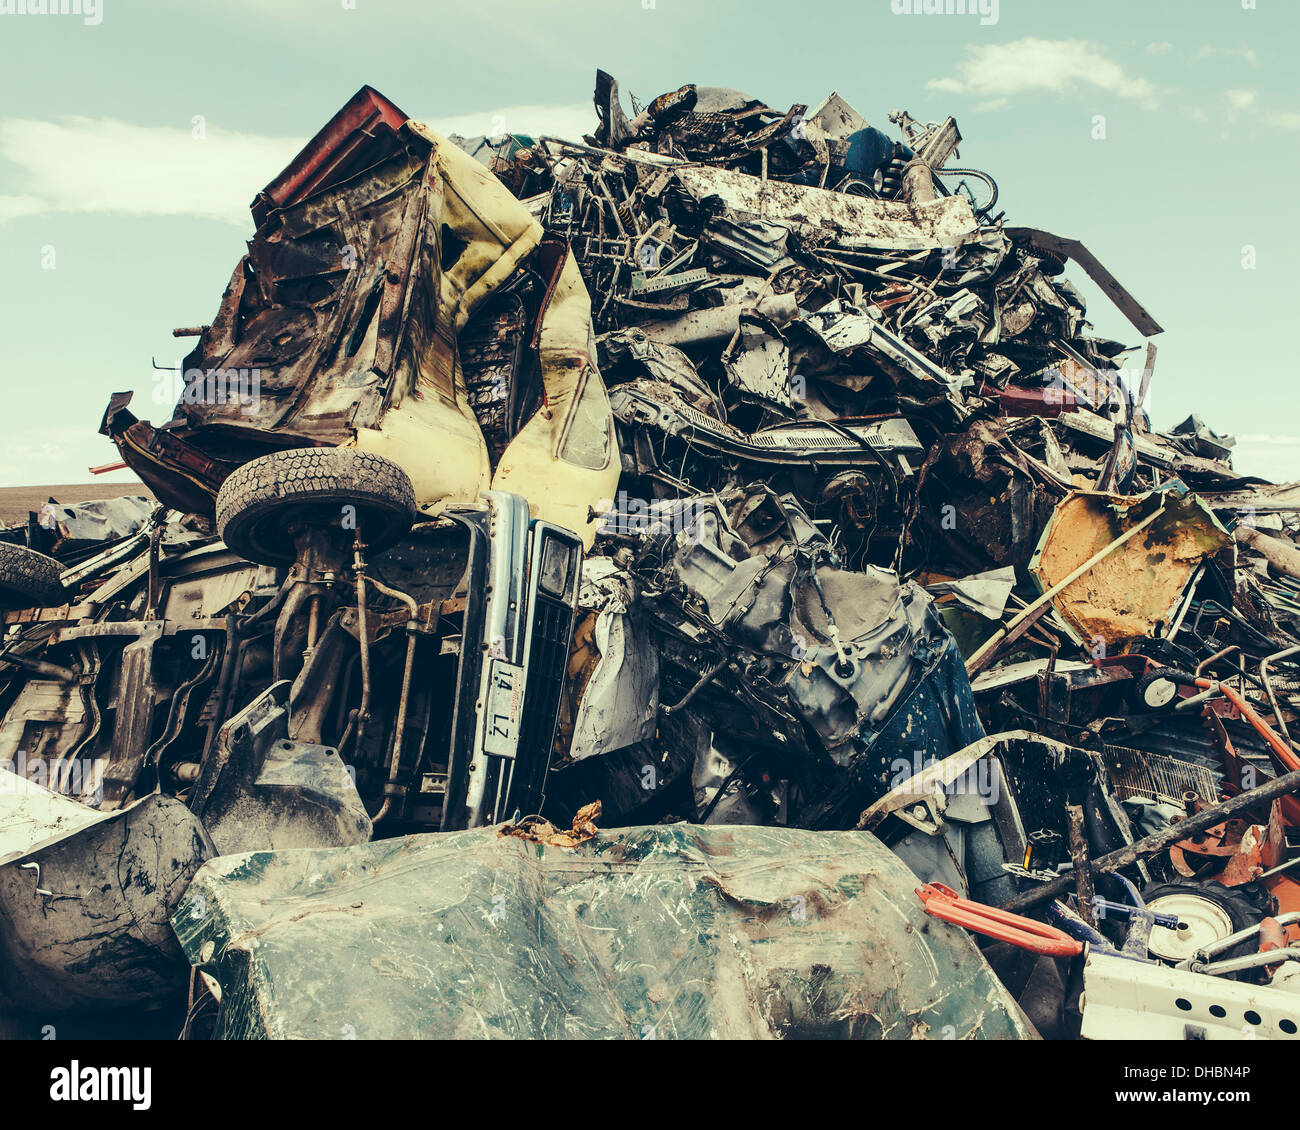 Ein Haufen von twisted Metal, Metal Schrottplatz, eine Auflistung von Objekten für das recycling. Stockfoto